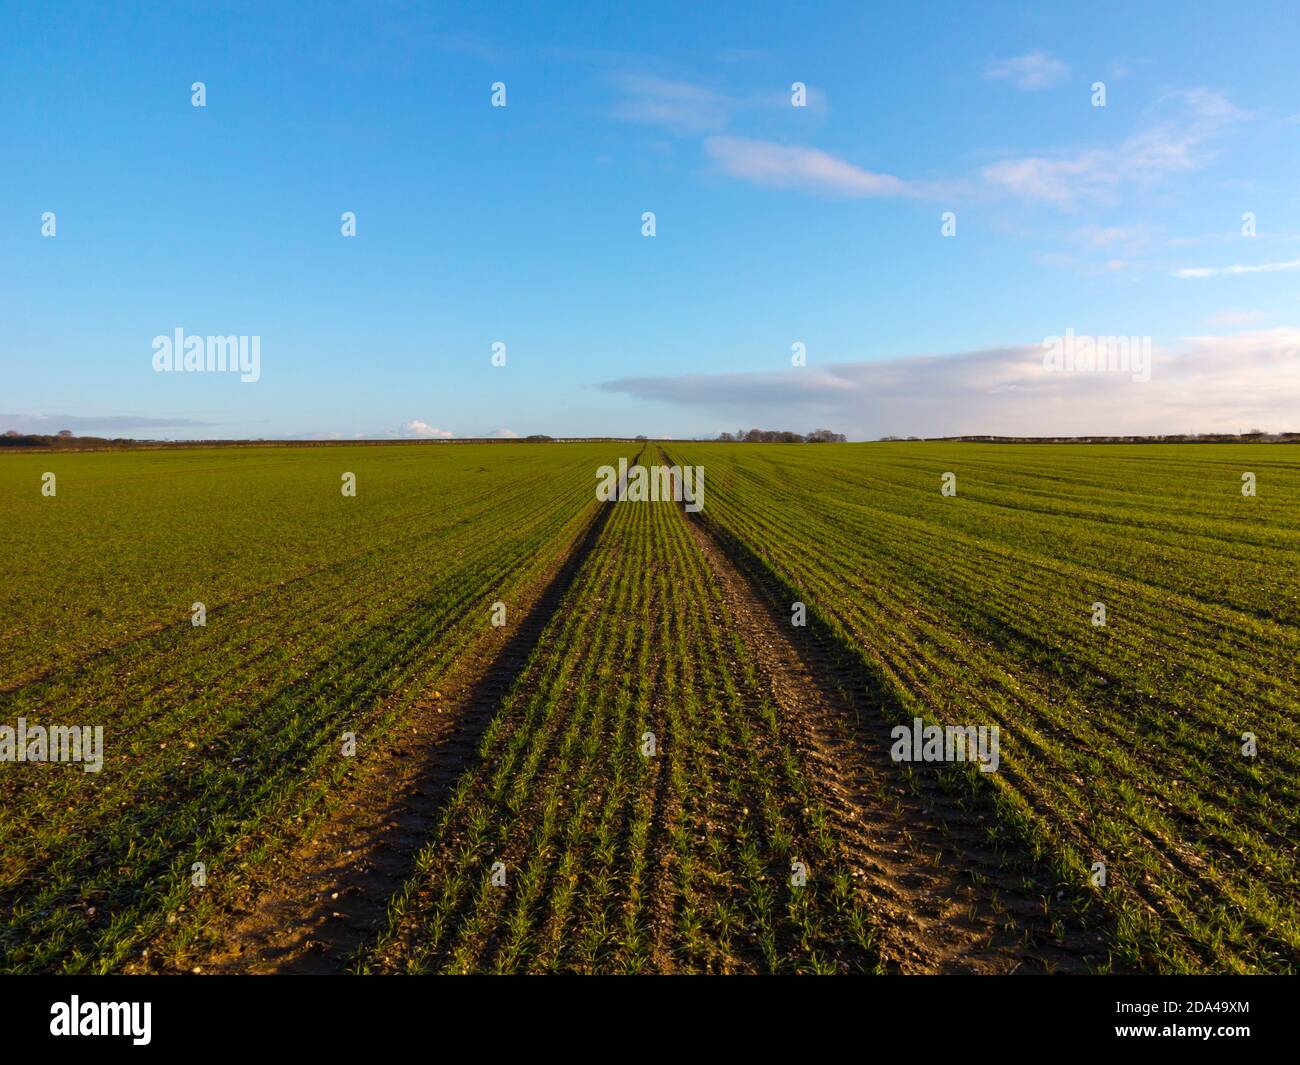 Paesaggio pianeggiante in una fattoria con campo di seminativi utilizzati per coltivare colture e giovani germogli che iniziano ad emergere dal suolo. Foto Stock